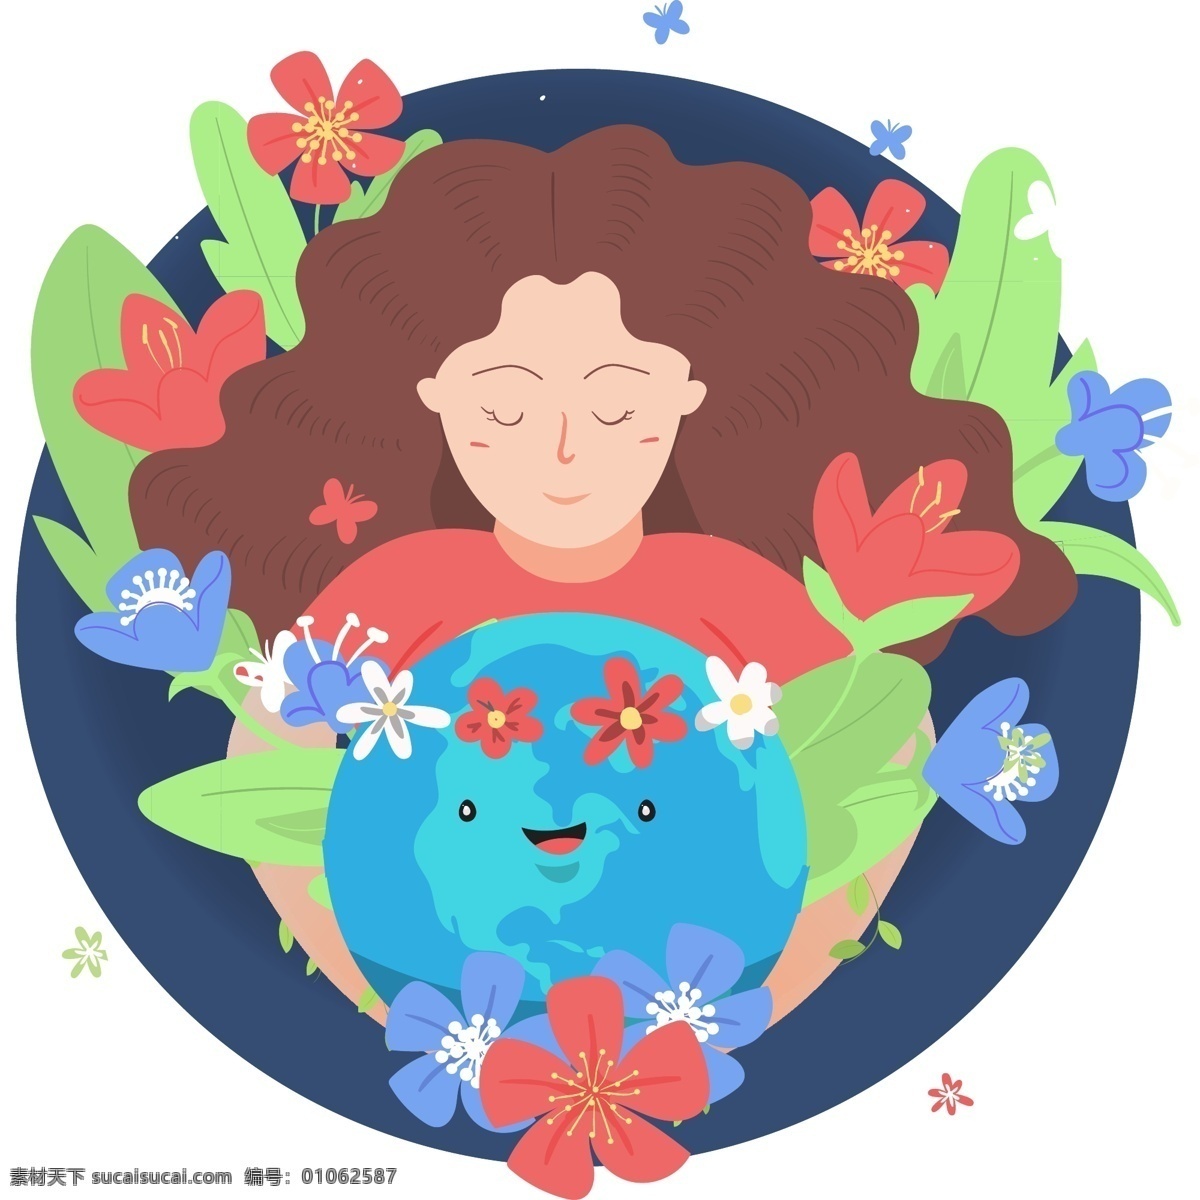 一个 手 抱 地球 女孩 生态 绿色 抱叶 休息 开朗 微笑的地球 大地 鲜花 大自然 环保 红色 蓝色